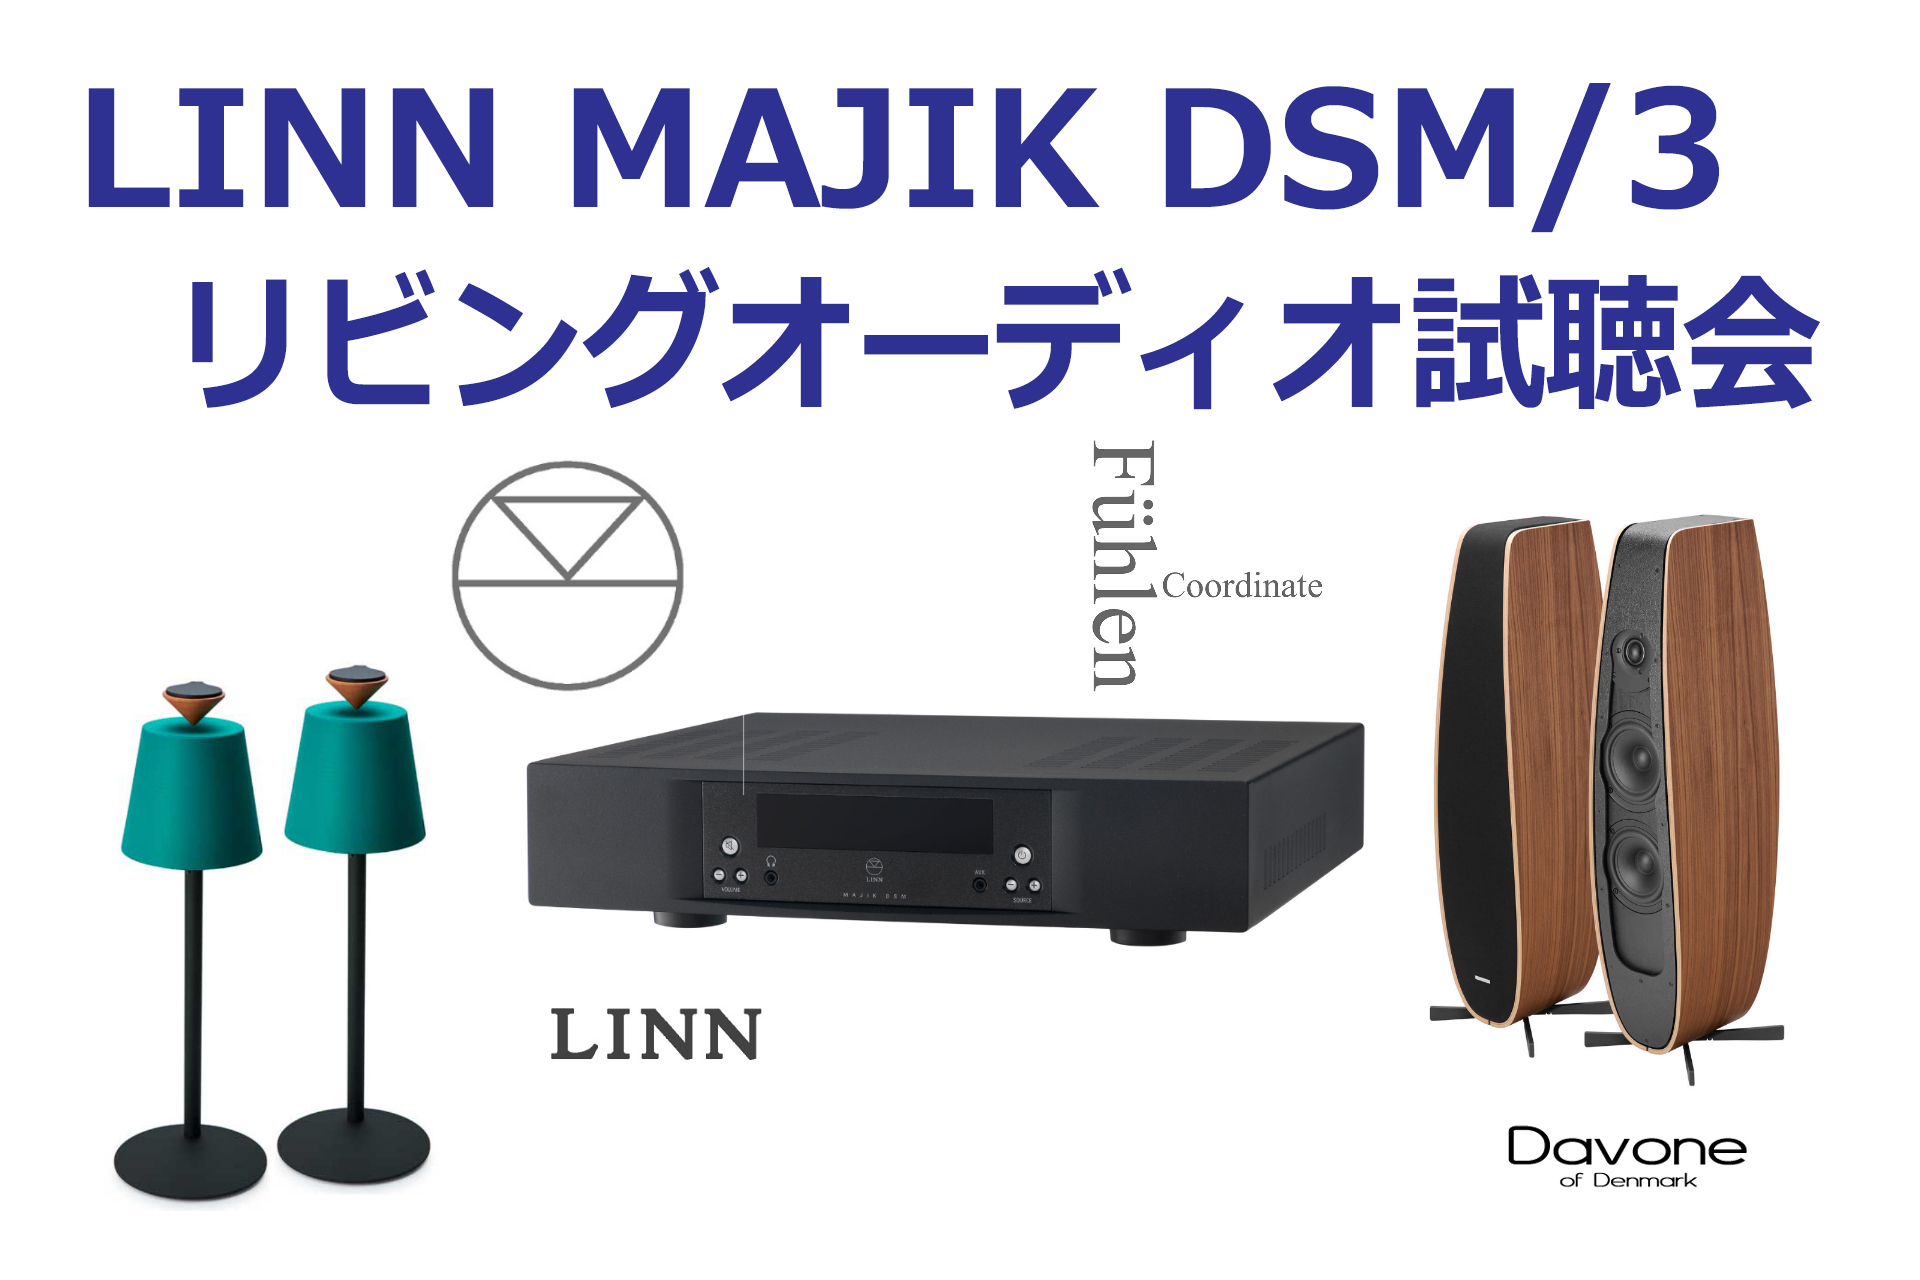 LINN MAJIK DSM/3 リビングオーディオ試聴会 & 商談会/オーディオ ...